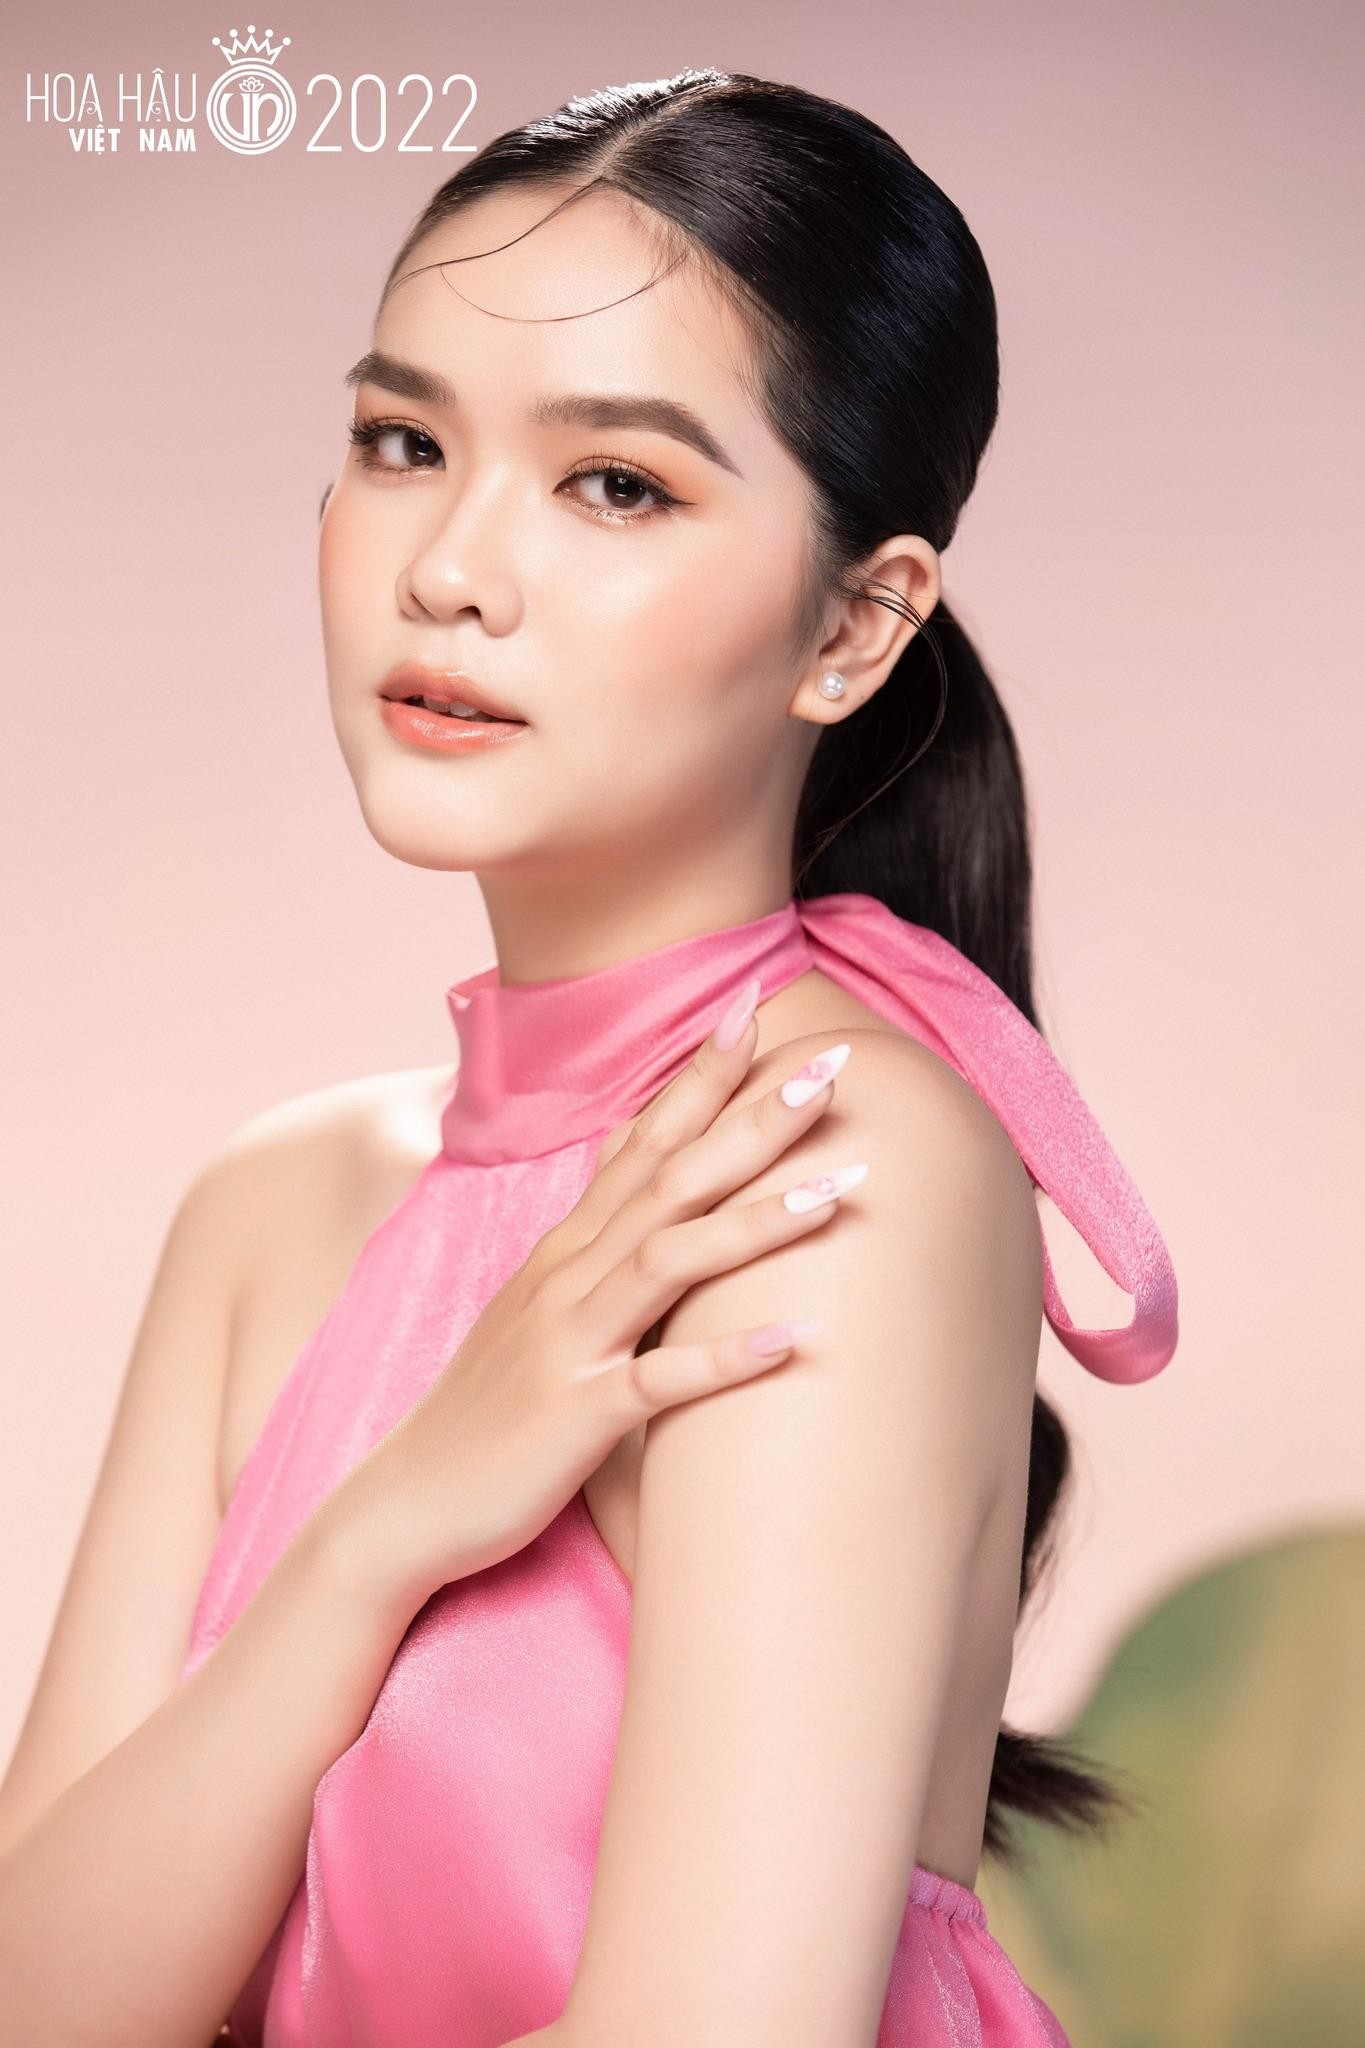 Nhan sắc cận của thí sinh Hoa hậu Việt Nam 2022 - Ảnh 10.